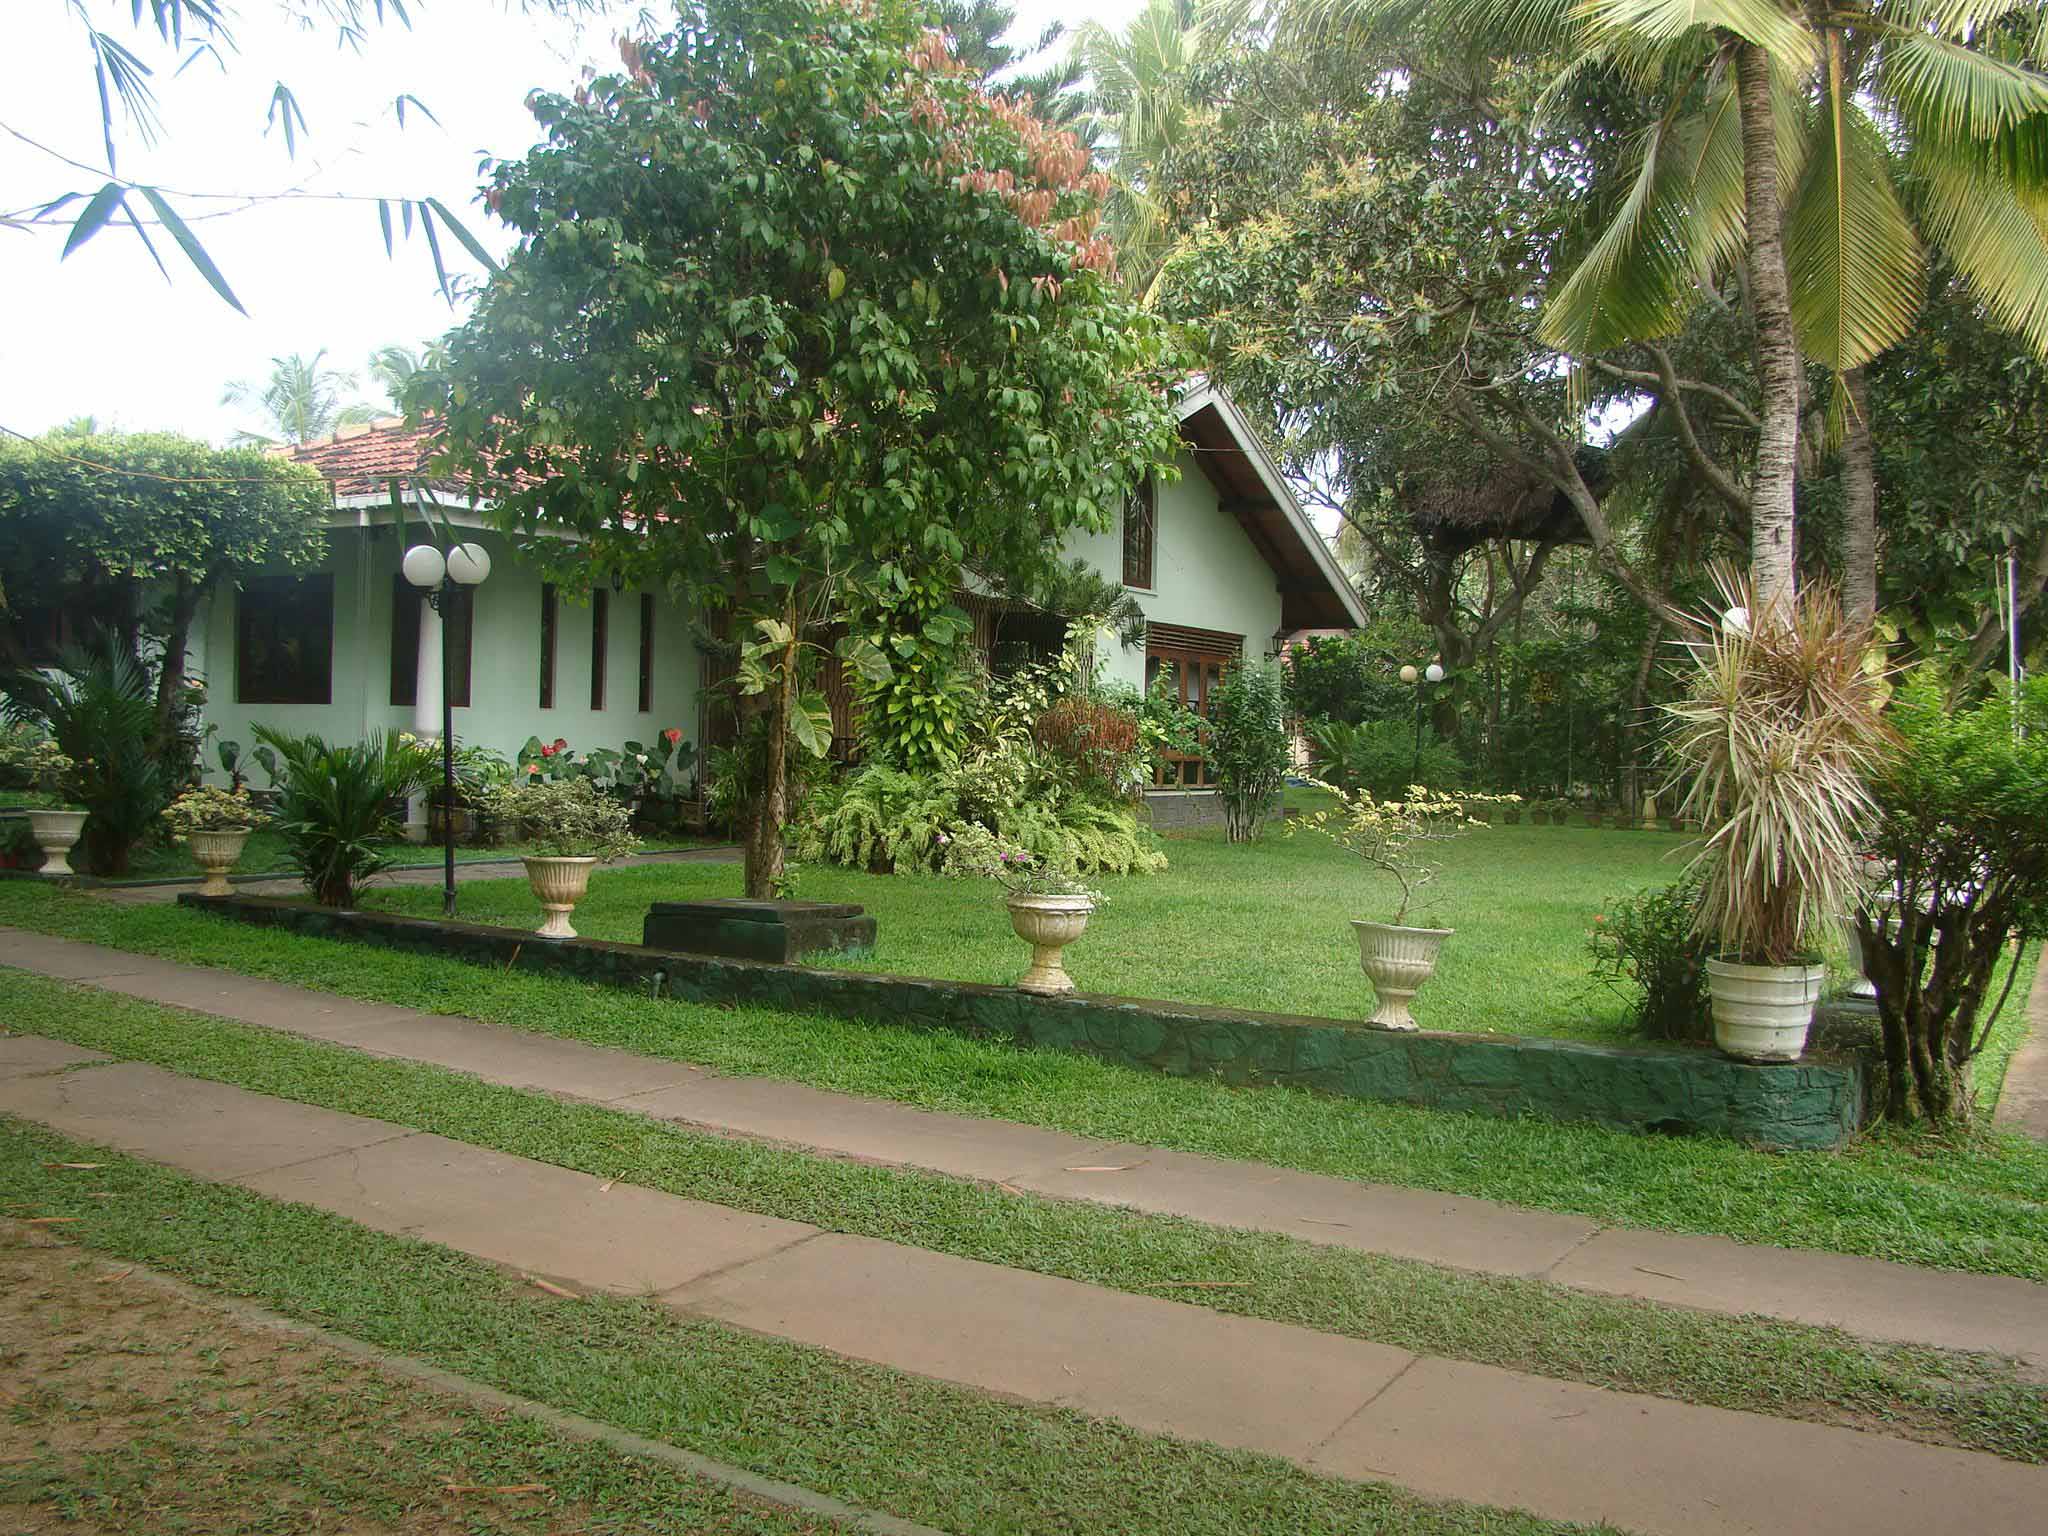 Home Garden Design In Sri Lanka Small Home Garden Design Sri Lanka